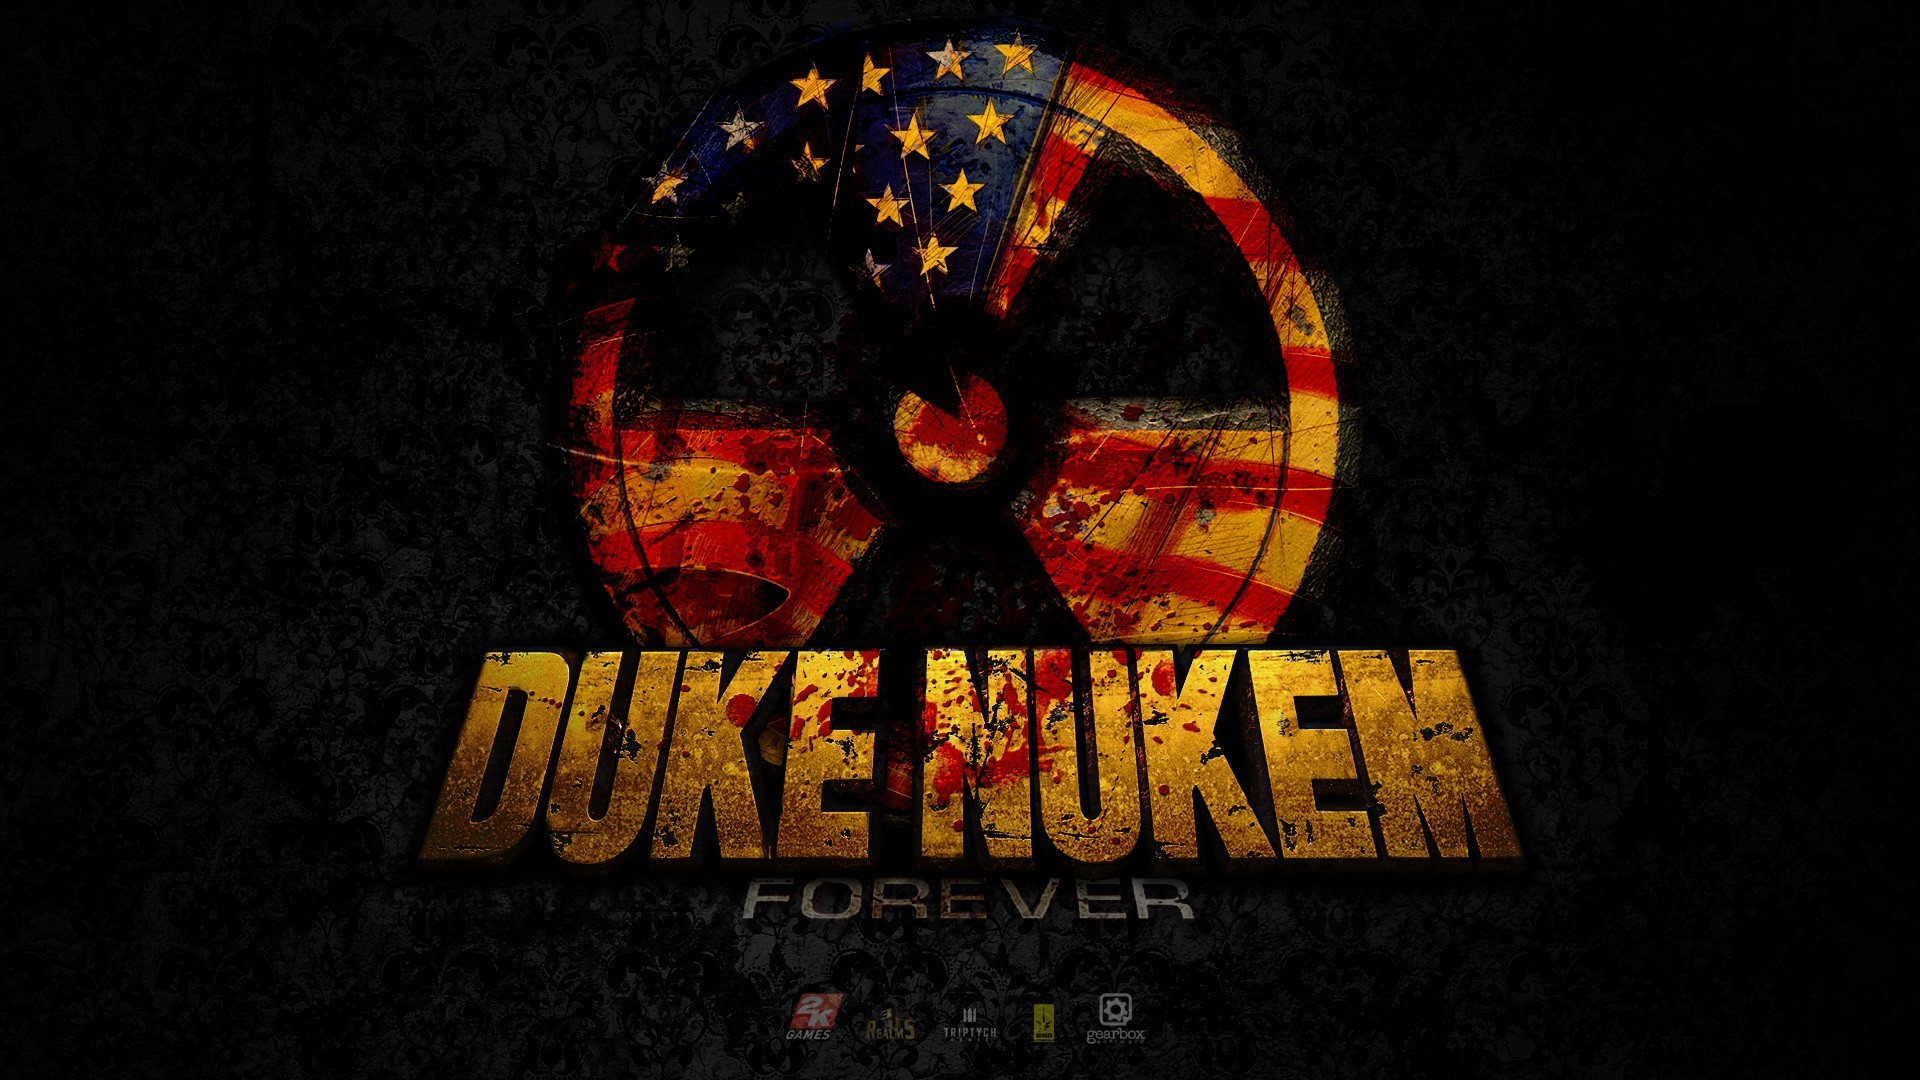 1920x1080 Duke Nukem Forever 2011  HD Image Games